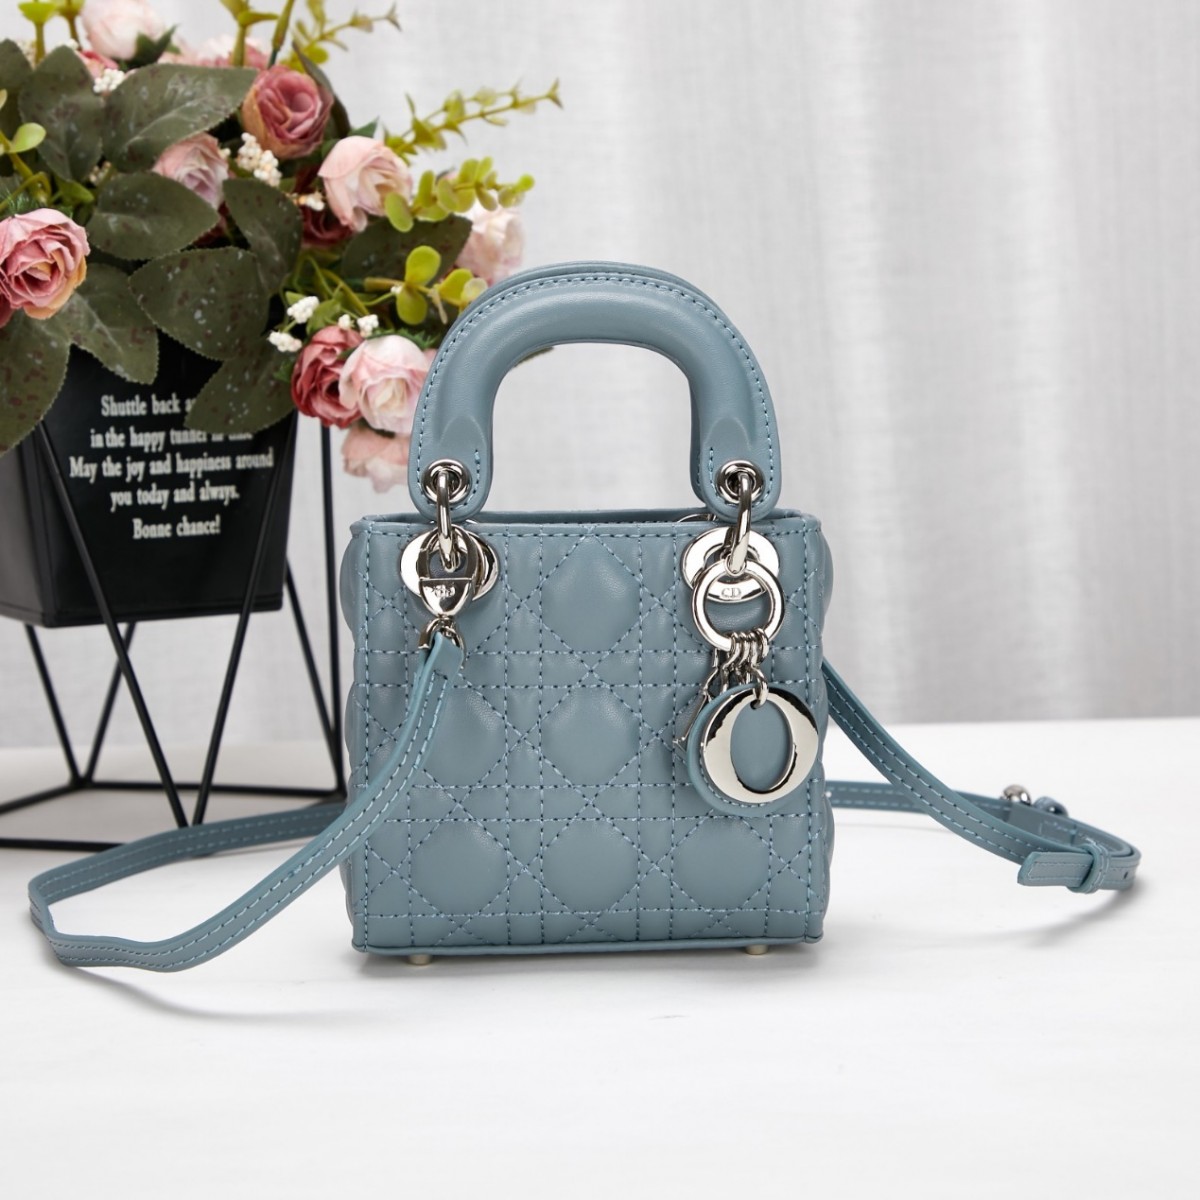 Por que as elegantes réplicas de bolsas Lady Dior são tão clássicas? (2022 atualizado) - Loja online de bolsa Louis Vuitton falsa de melhor qualidade, bolsa de designer de réplica